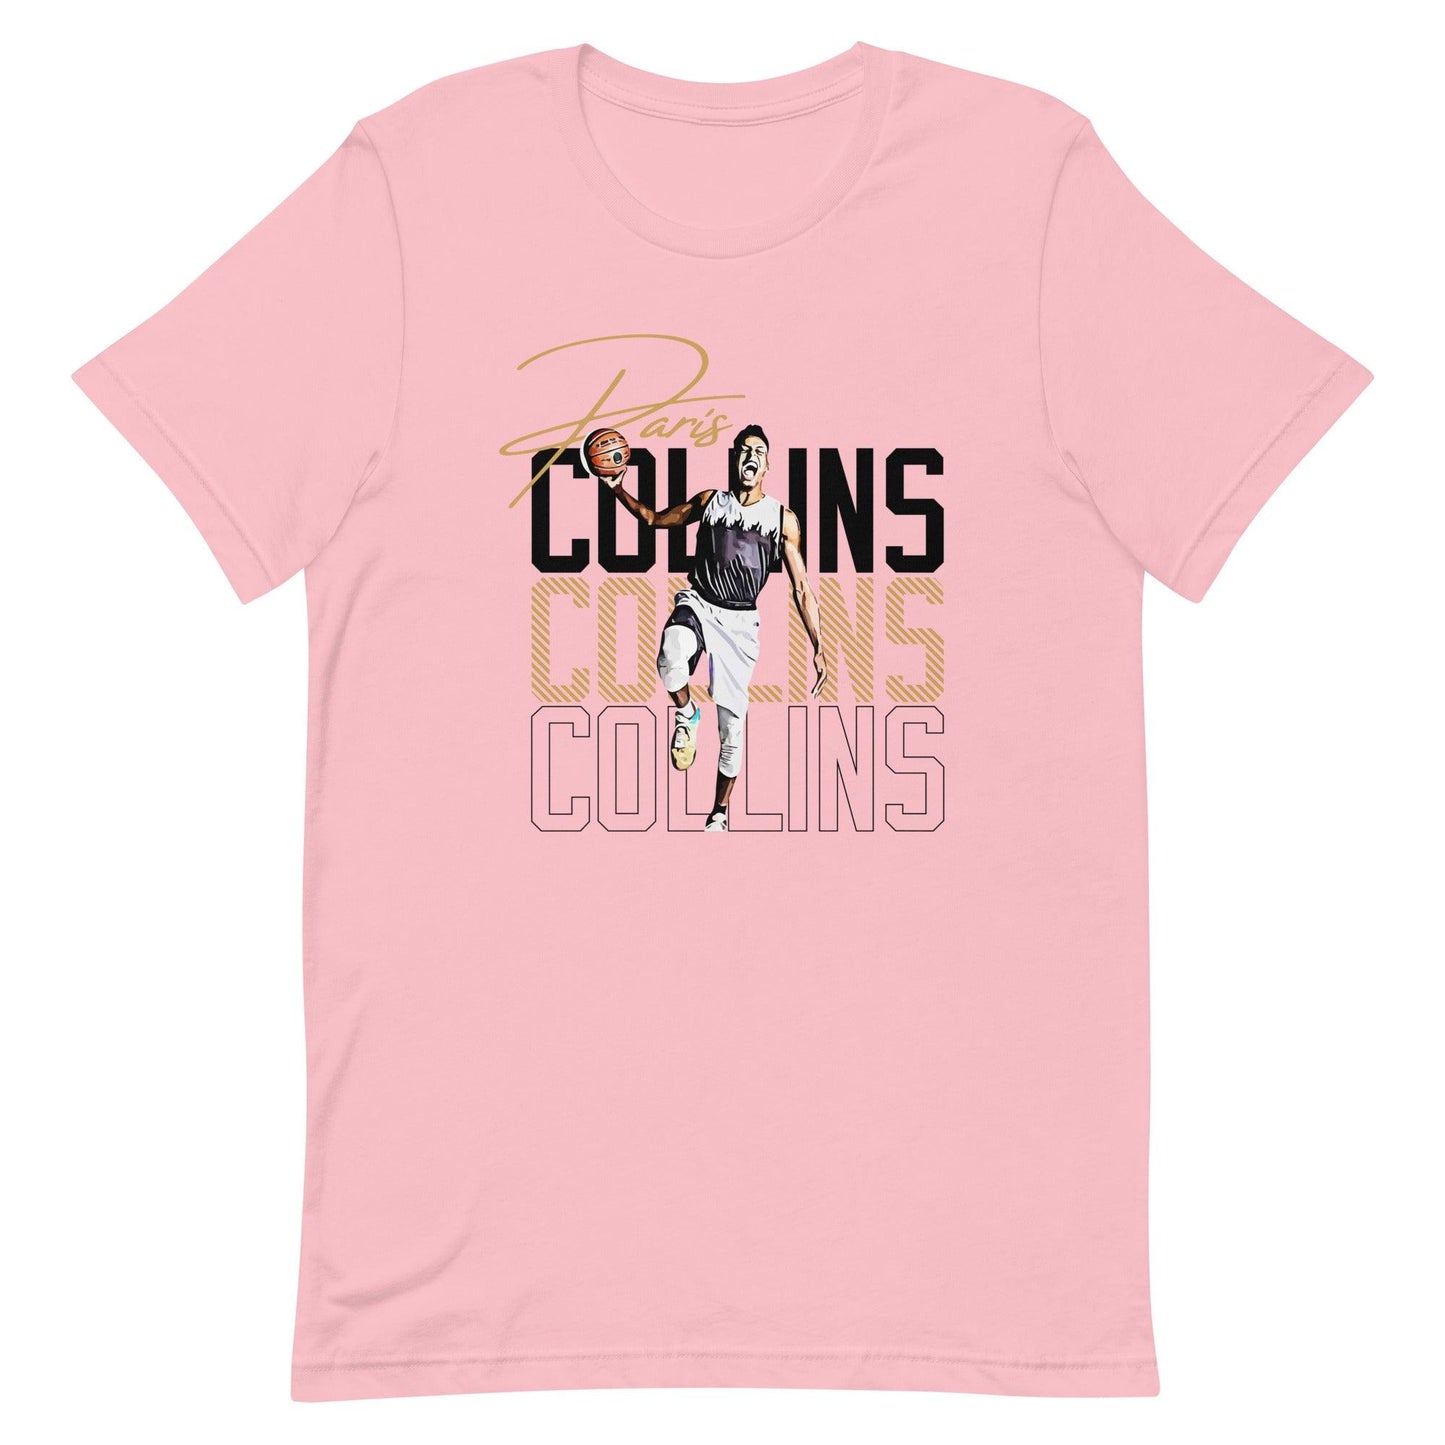 Paris Collins “Essential” t-shirt - Fan Arch